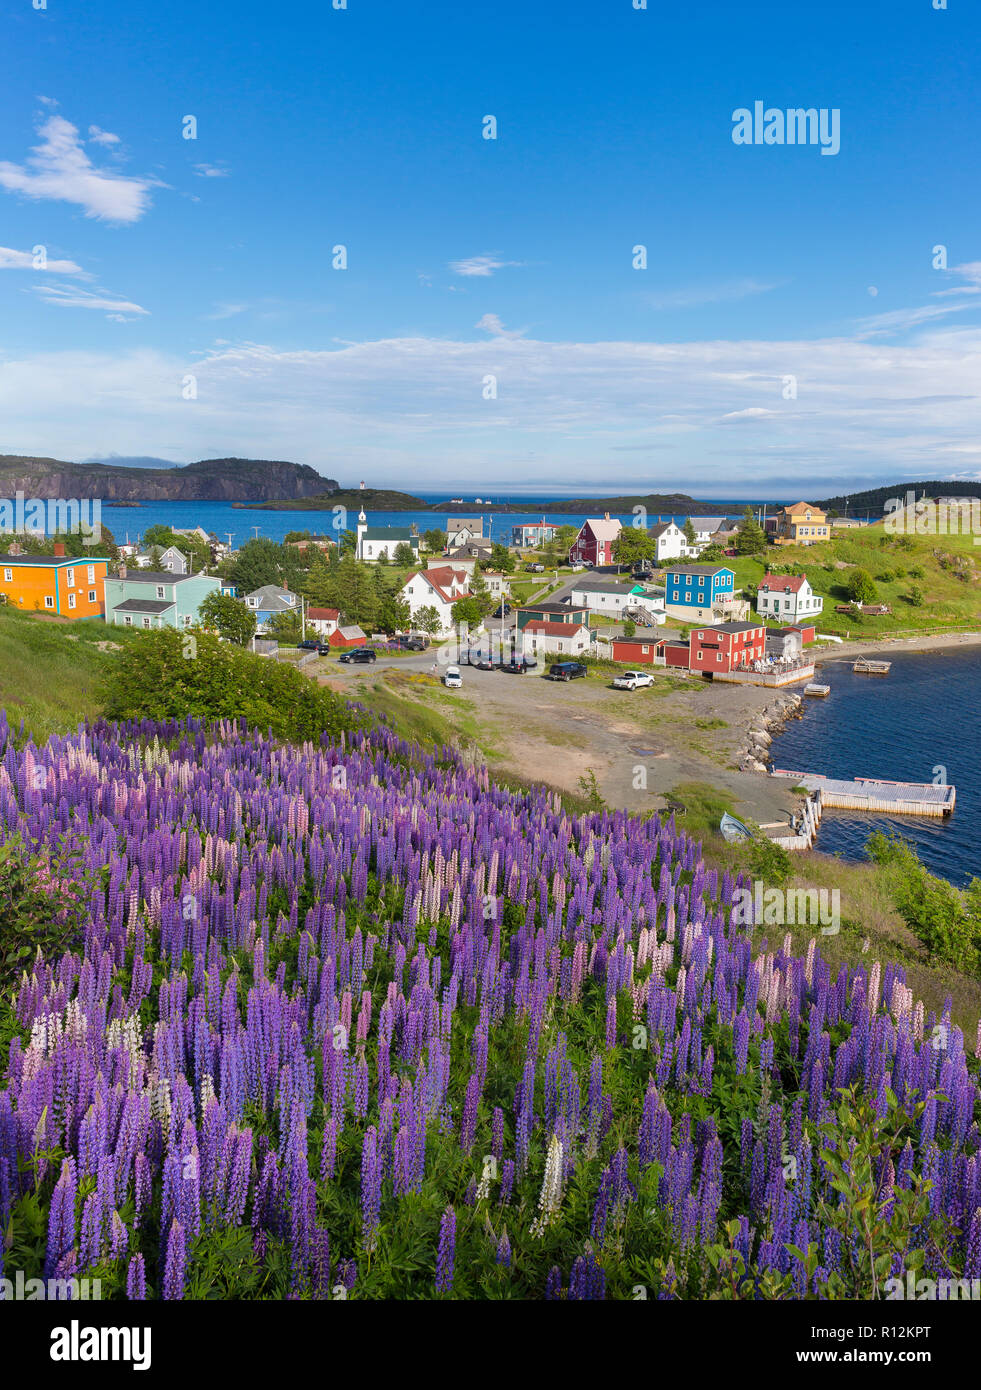 Dreifaltigkeit, Neufundland, Kanada - Lila Lupine Blüte bei der kleinen Stadt Trinity. Lupinus. Stockfoto